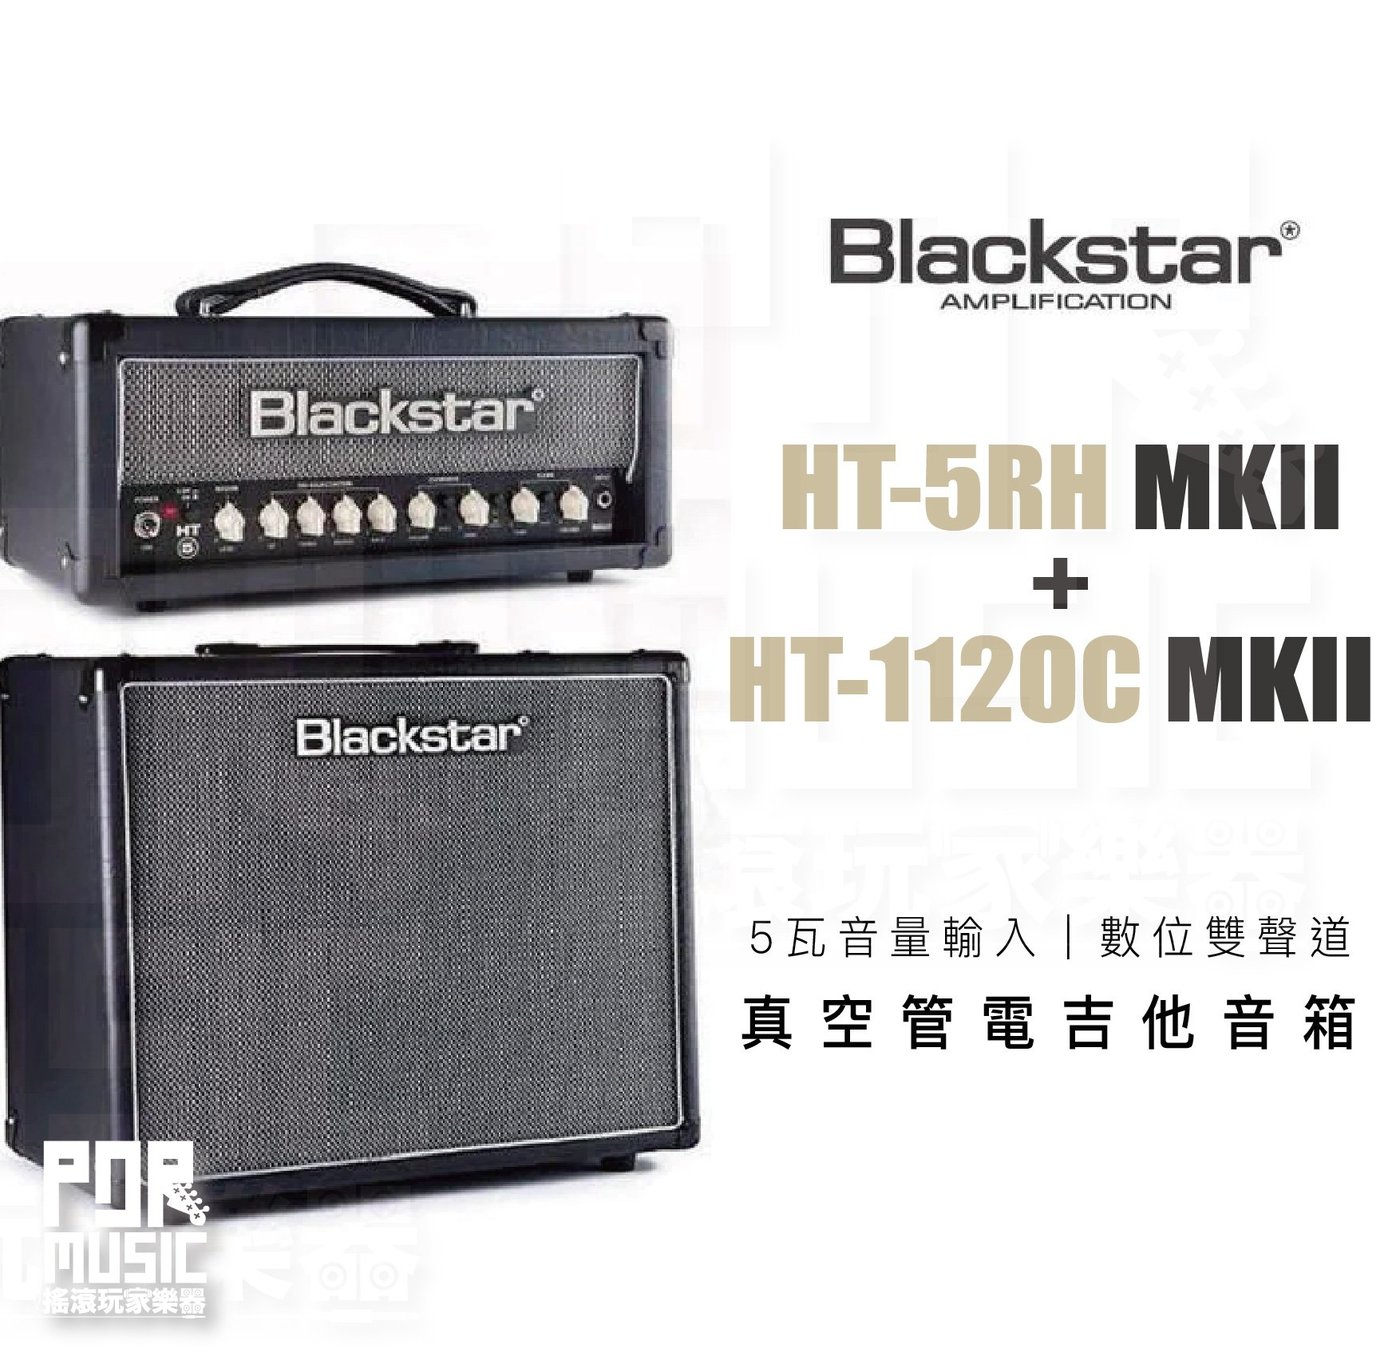 今年も話題の Blackstar HT-5TH 日本限定200台 アンプ - ivnl.com.br